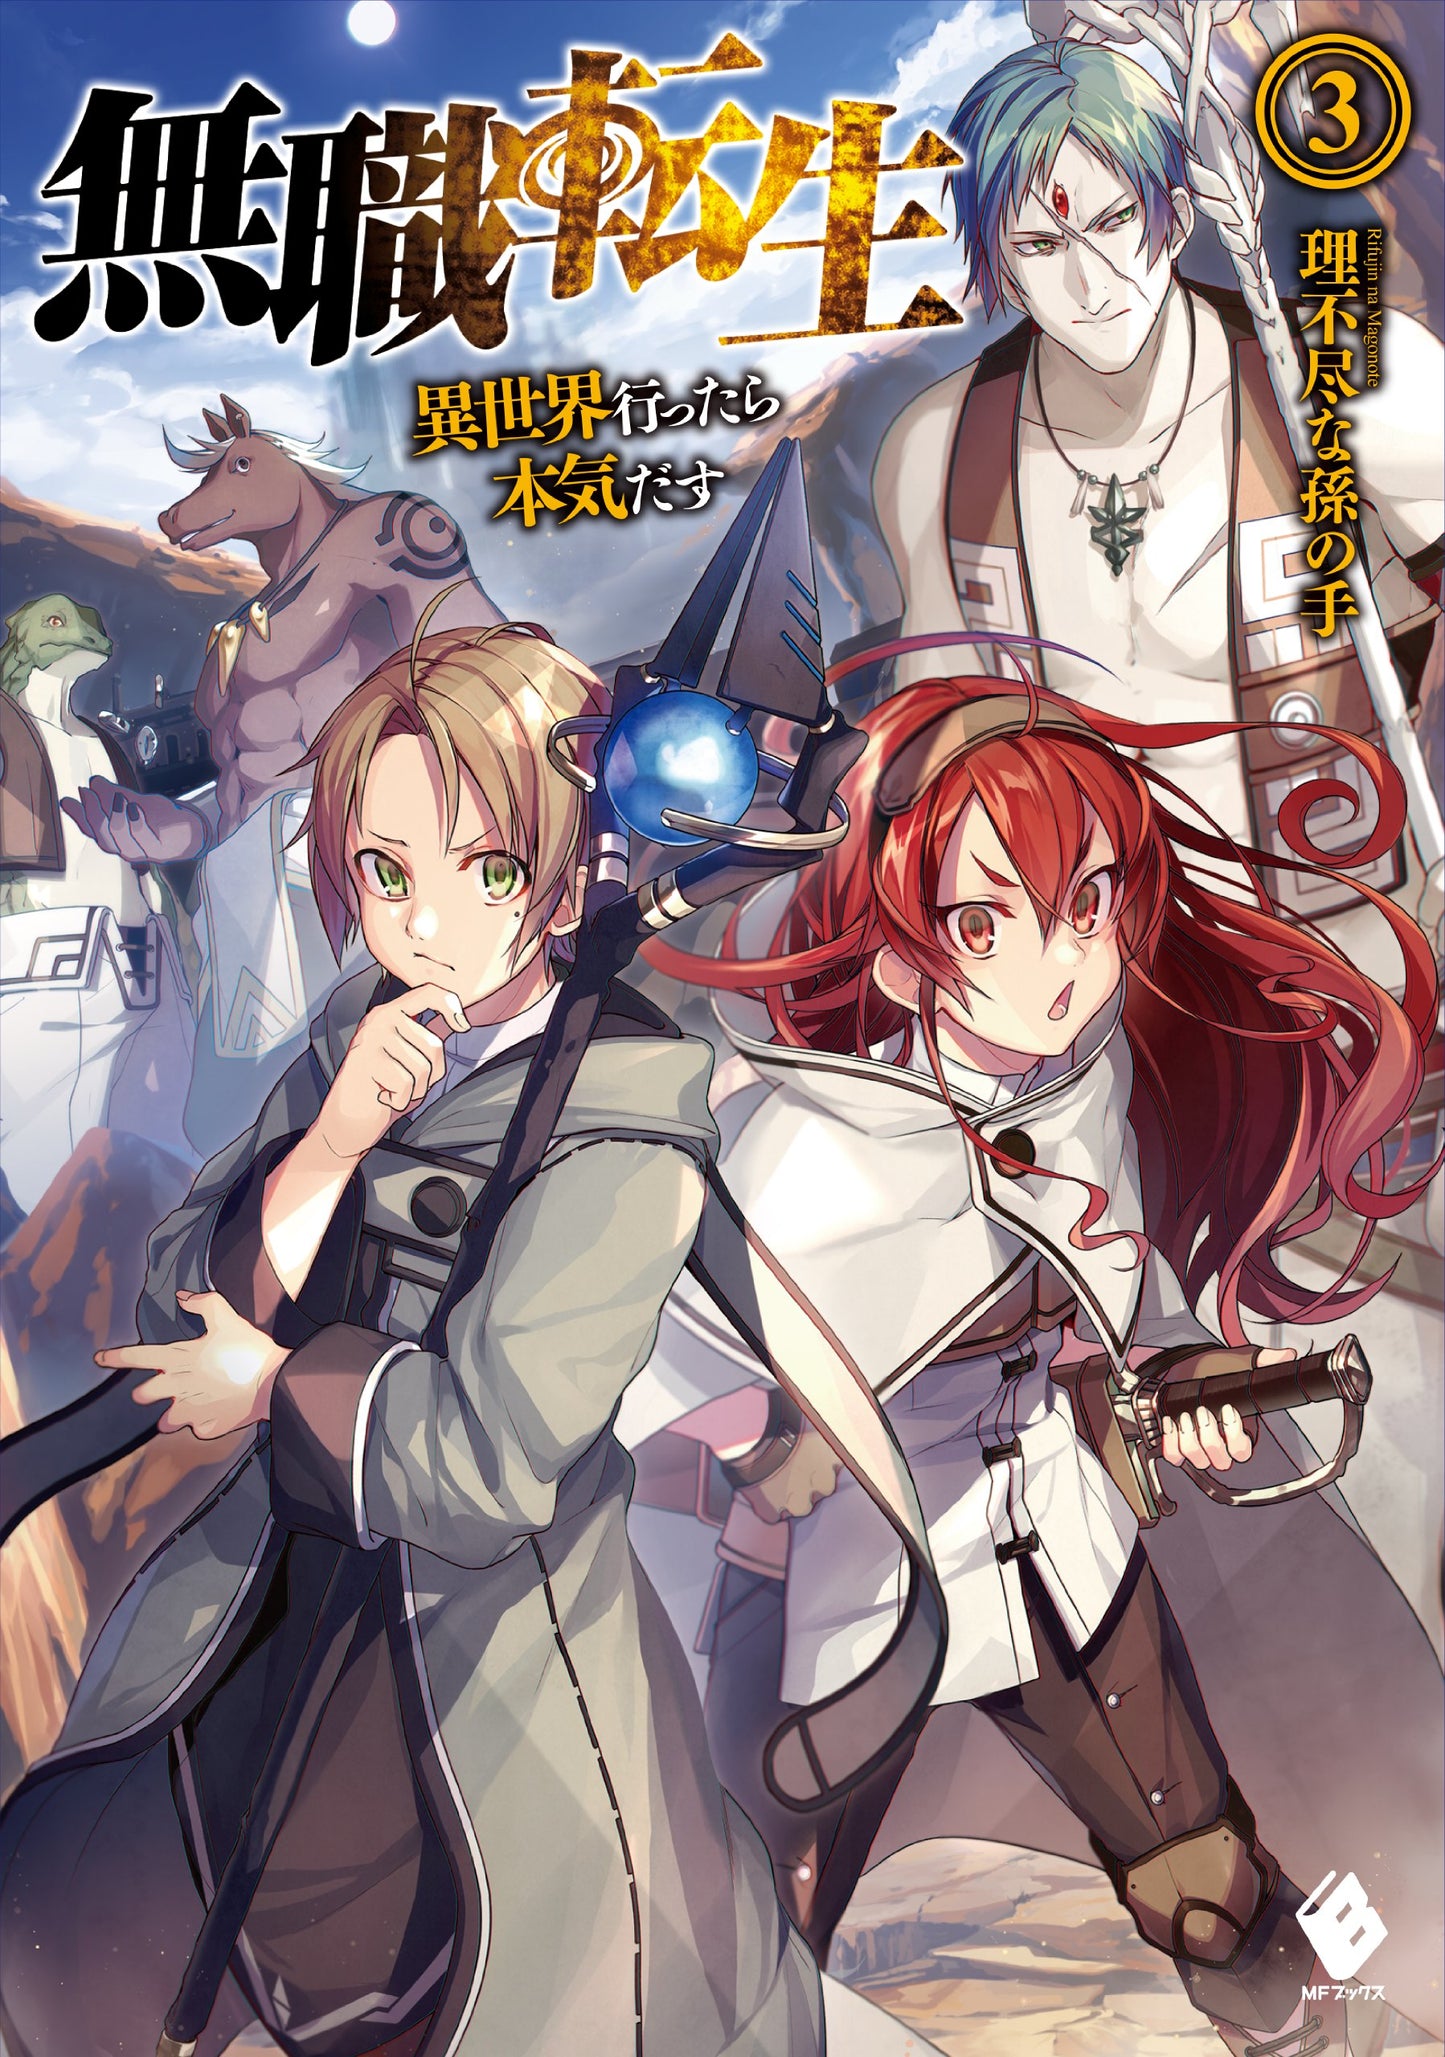 Mushoku Tensei: Jobless Reincarnation Japanese light novel volume 3 front cover